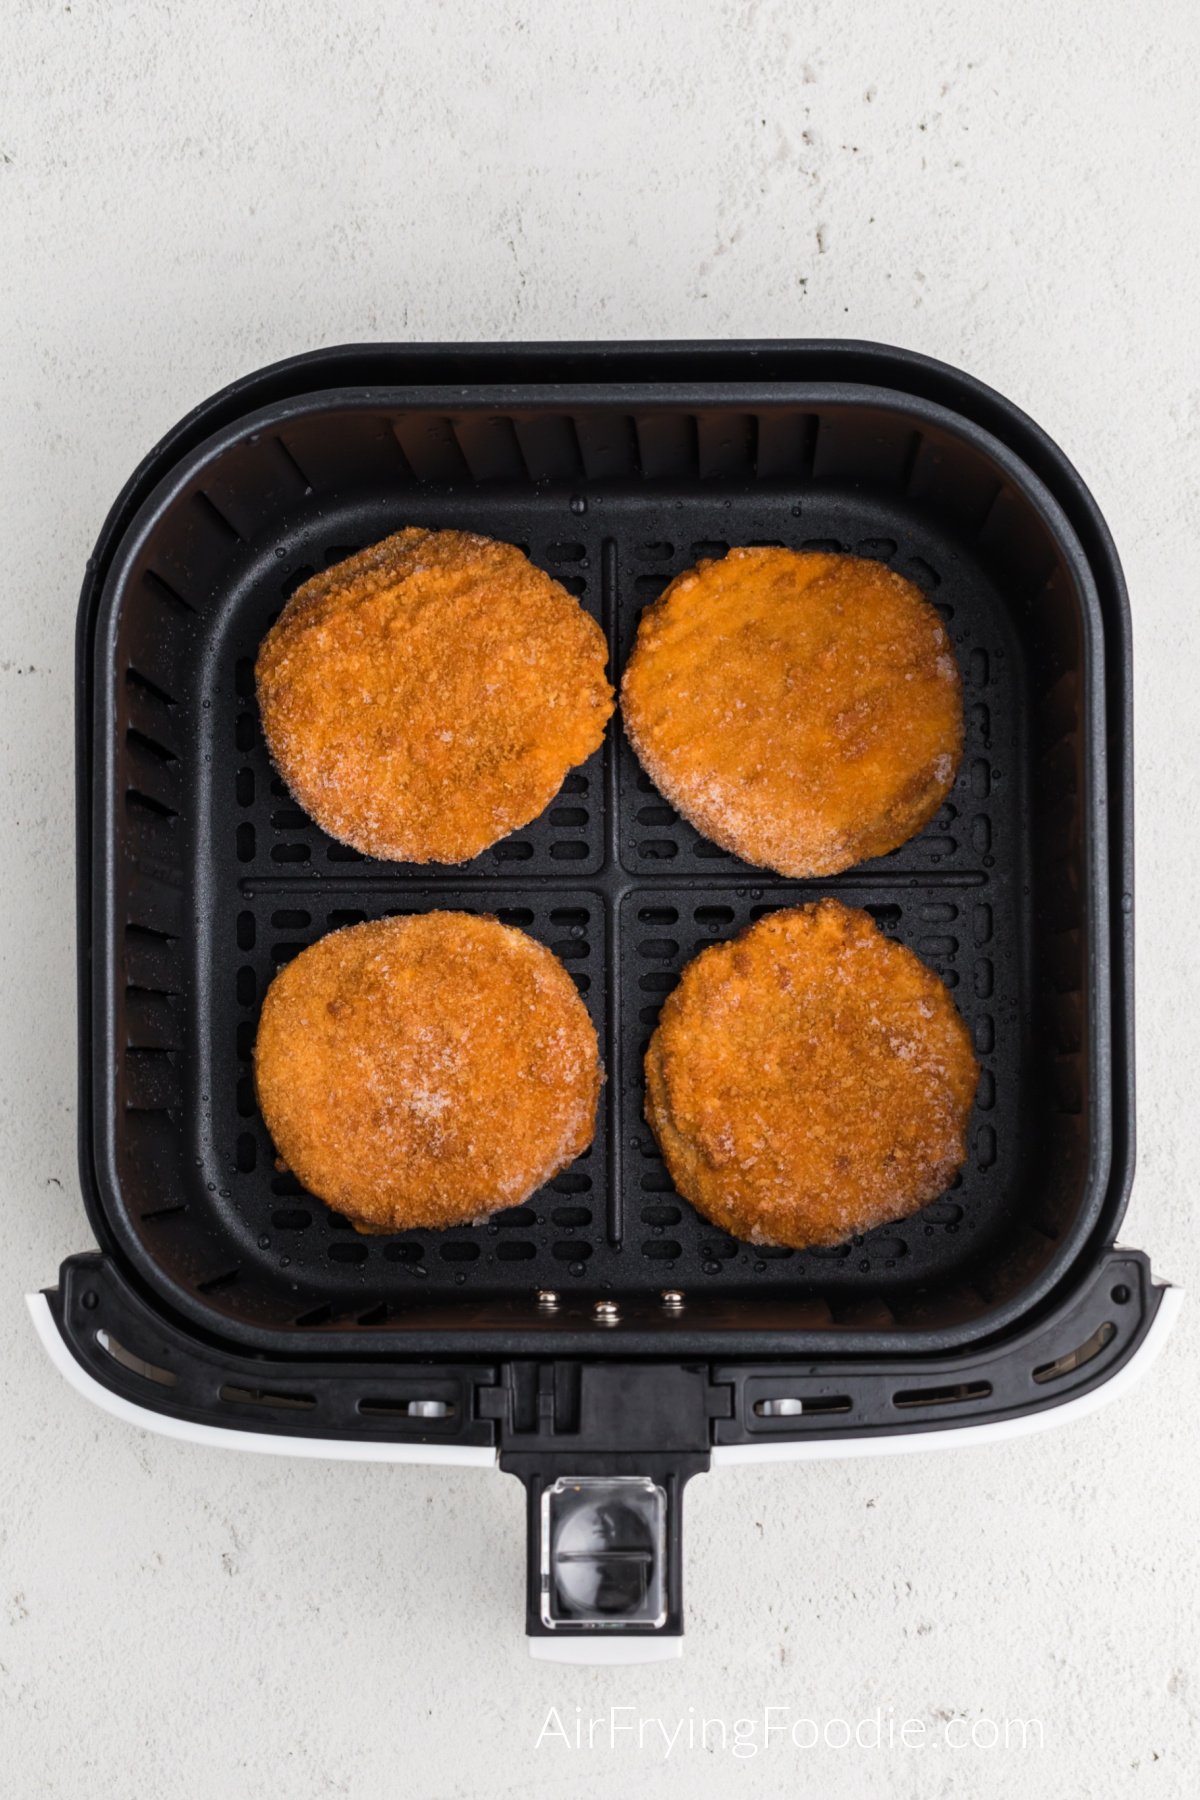 frozen chicken patties in air fryer basket ready to cook.